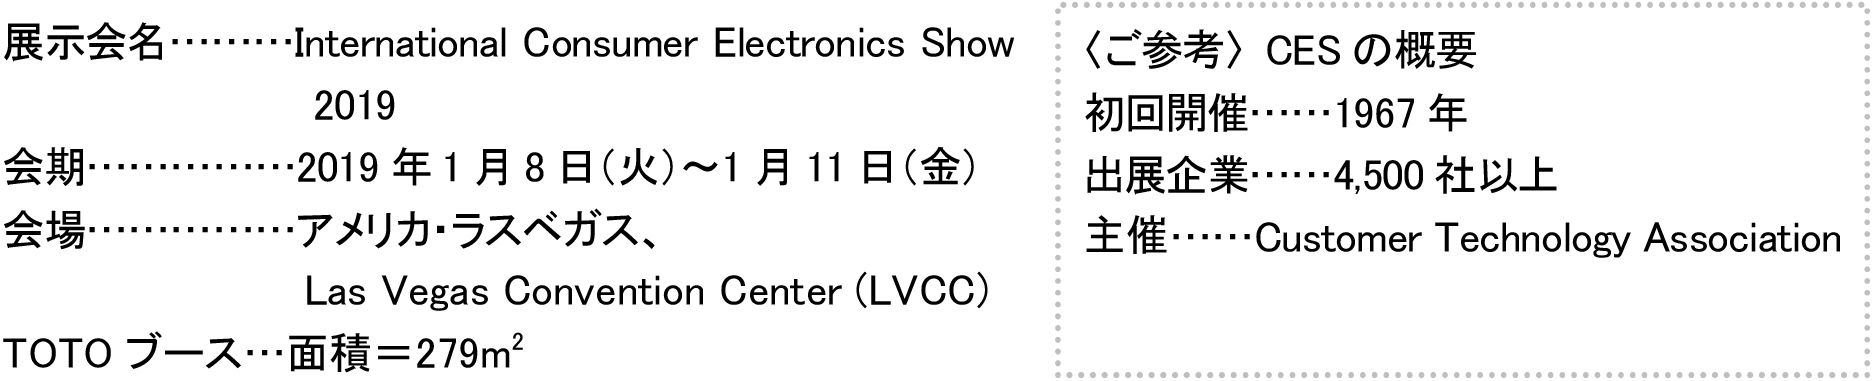 展示会名:International Consumer Electronics Show 2019 会期:2019年1月8日（火）～1月11日（金） 会場:アメリカ・ラスベガス、Las Vegas Convention Center (LVCC) TOTOブース:面積＝279m2